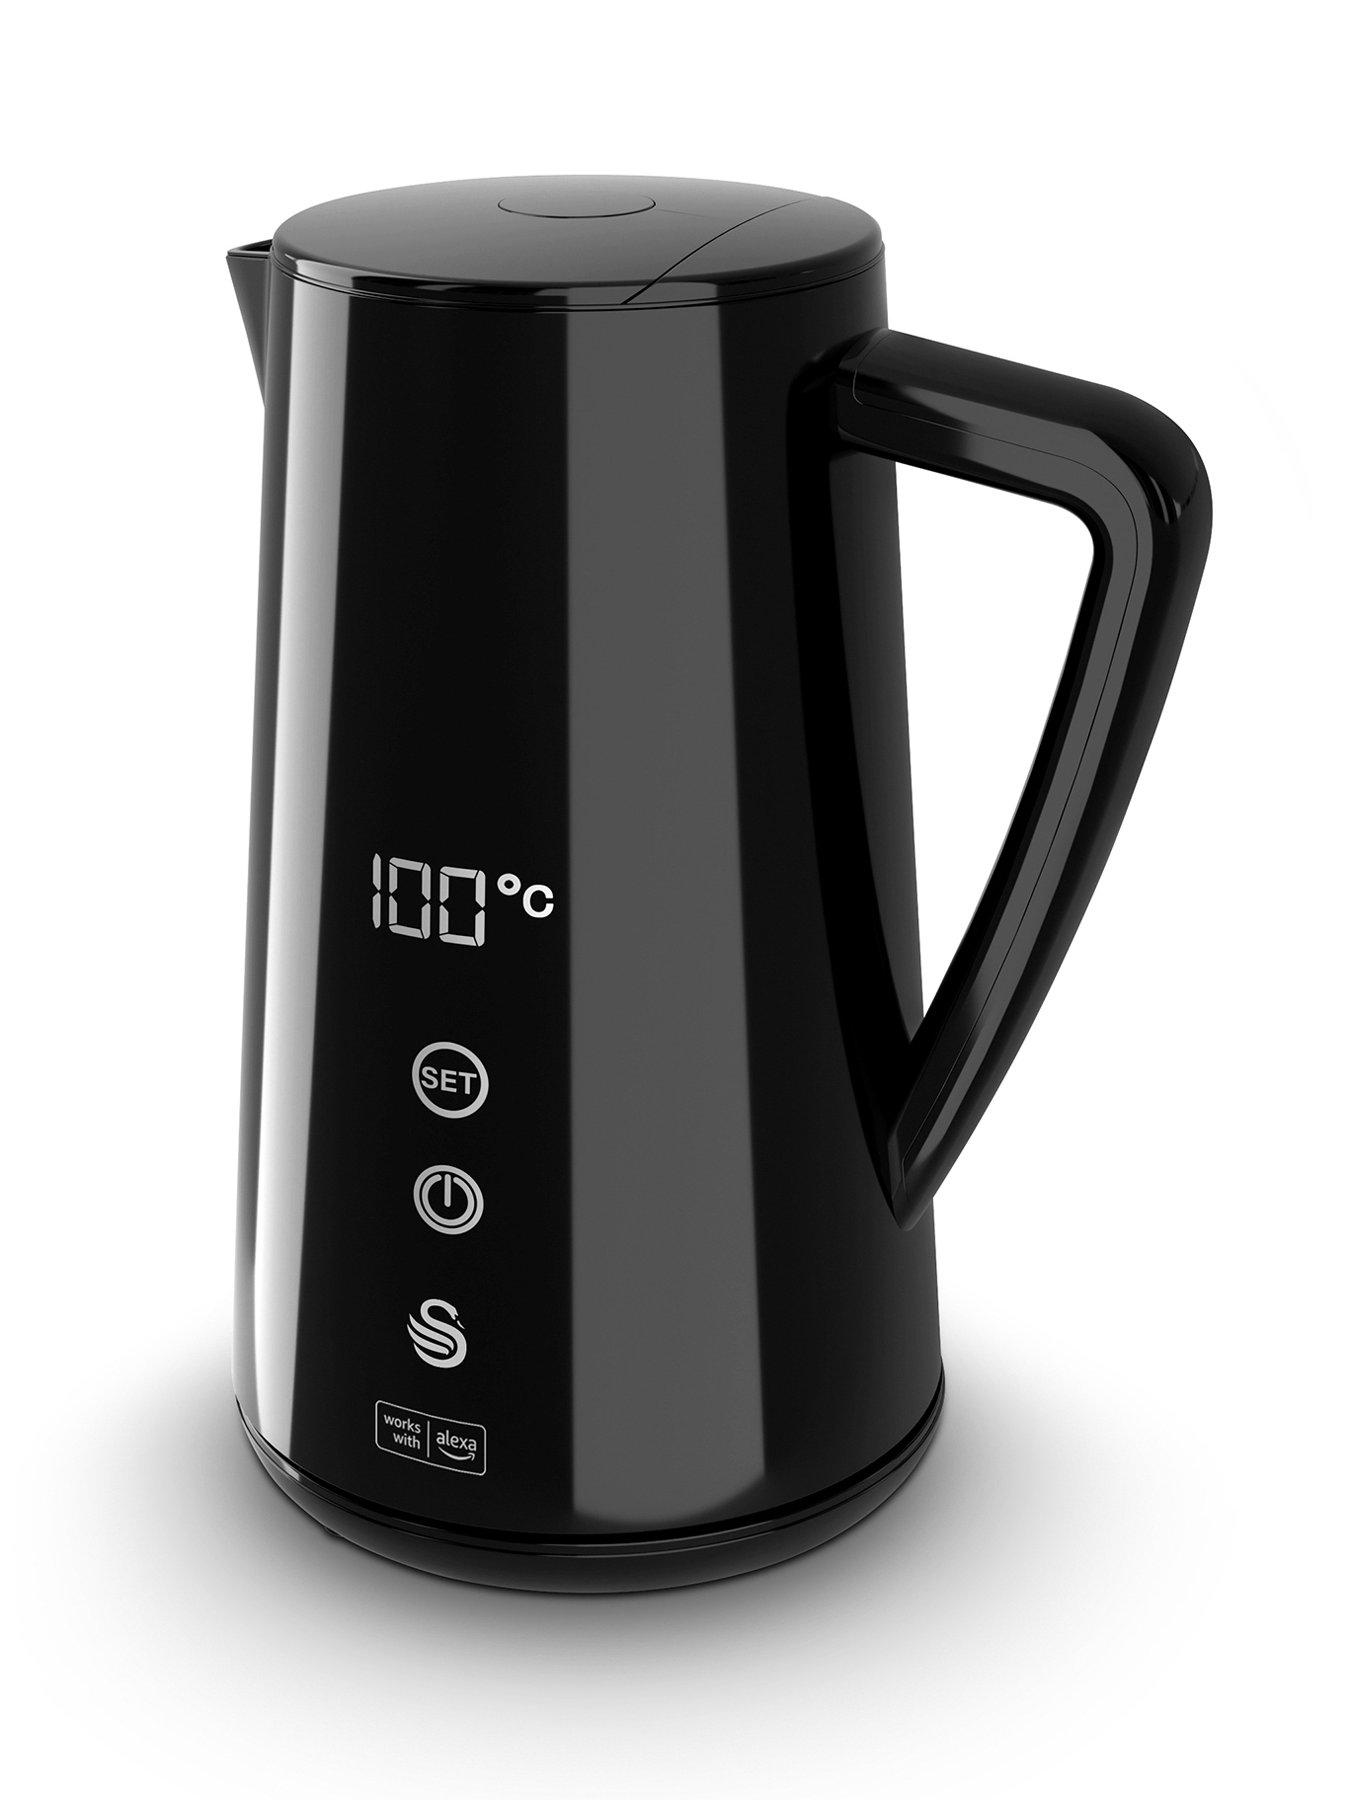 Swan Alexa Smart Kettle Review: Alexa, Make Tea - Tech Advisor